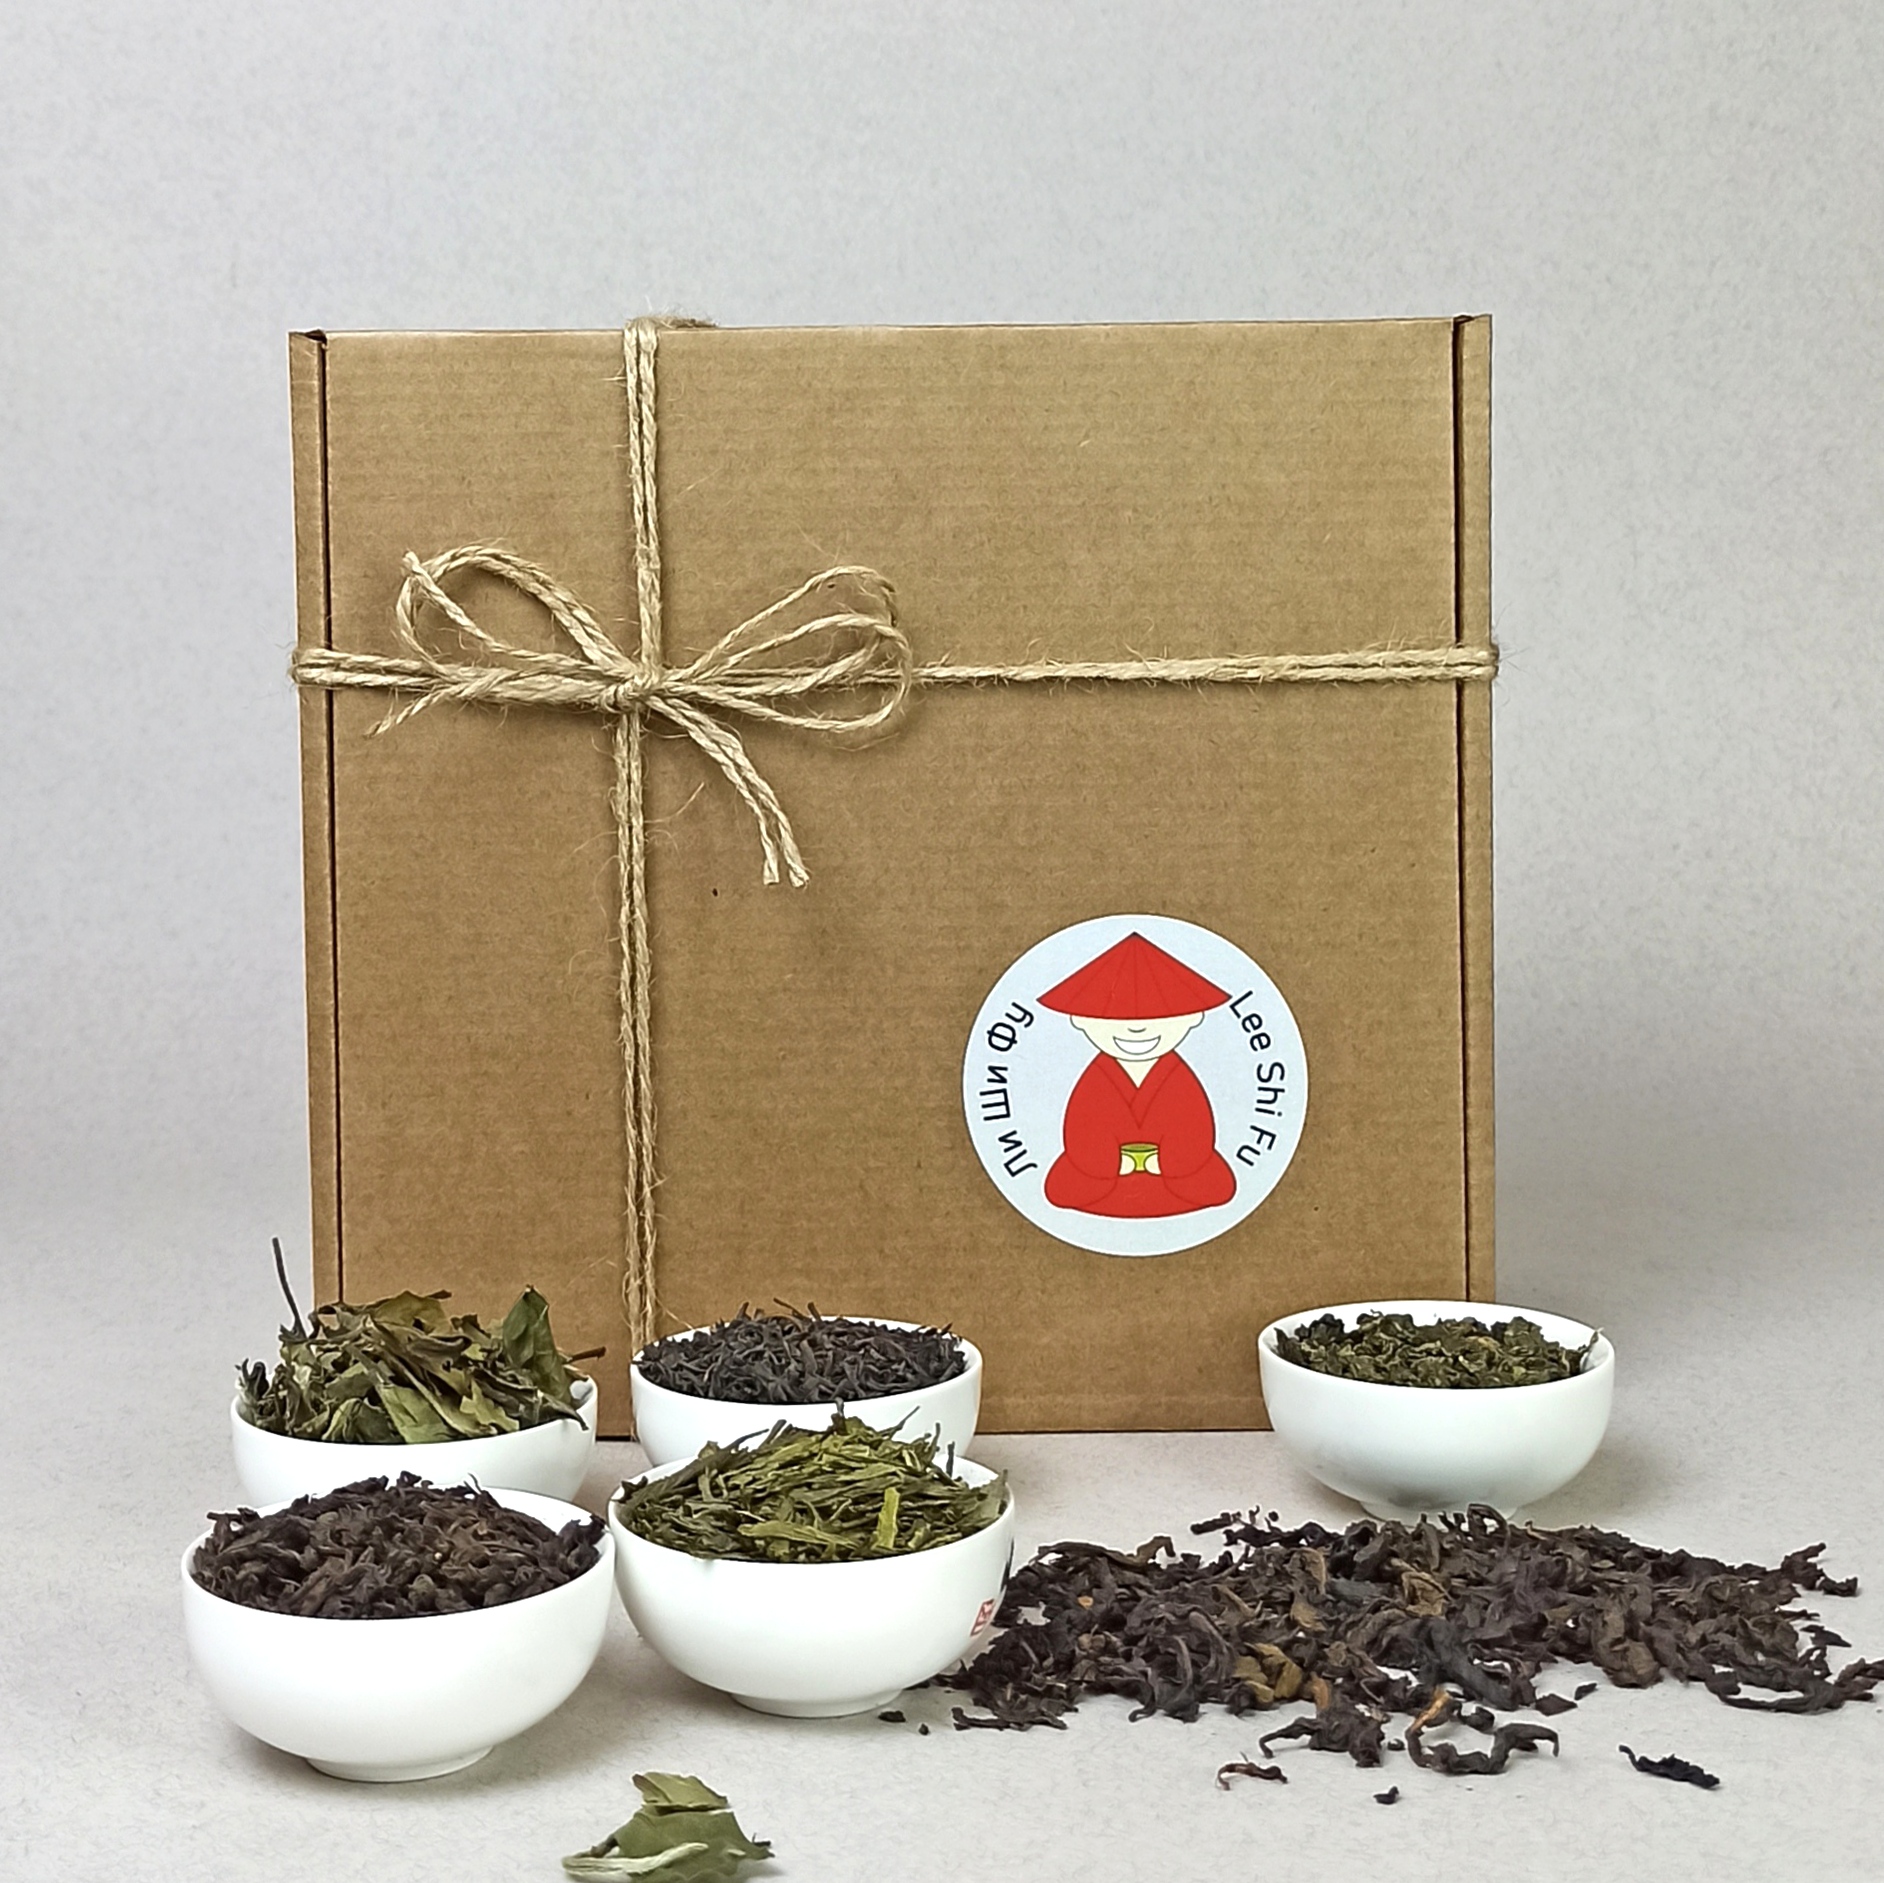 Подарочный набор чая Семь чашек Ли ши фу - знакомство с китайским чаем, 6 видов по 50 г